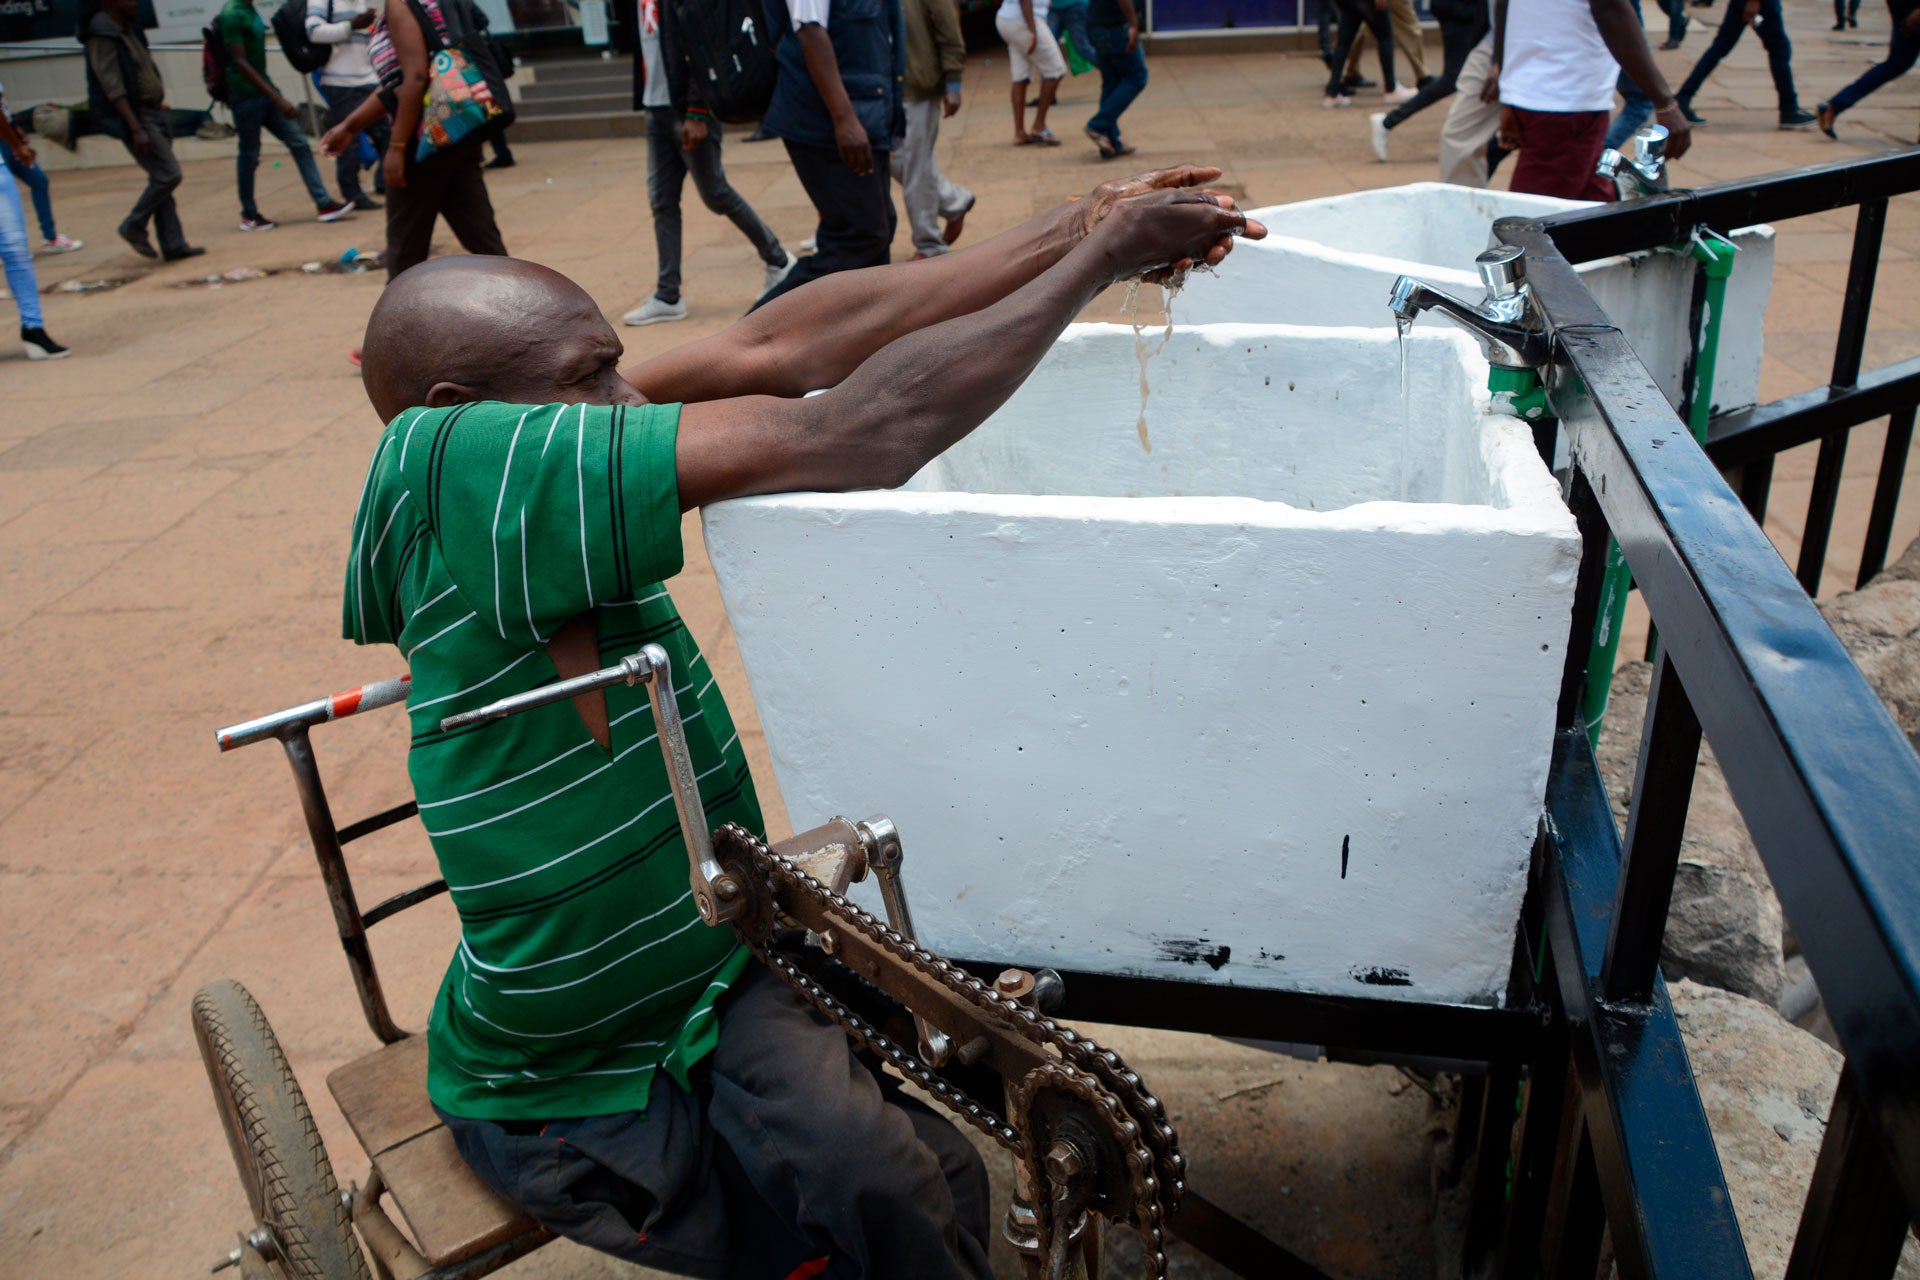 Նկարում պատկերված է անվասայլակ օգտագործող մարդ, ով Քենիայի մայրաքաղաք Նաիրոբիում հանրային վայրում տեղադրված ջրի ծորակի տակ ձեռքերն է լվանում՝ որպես կանխարգելիչ միջոց ընդդեմ ԿՈՎԻԴ-19-ի: 22-ը մարտի, 2020 թ.: